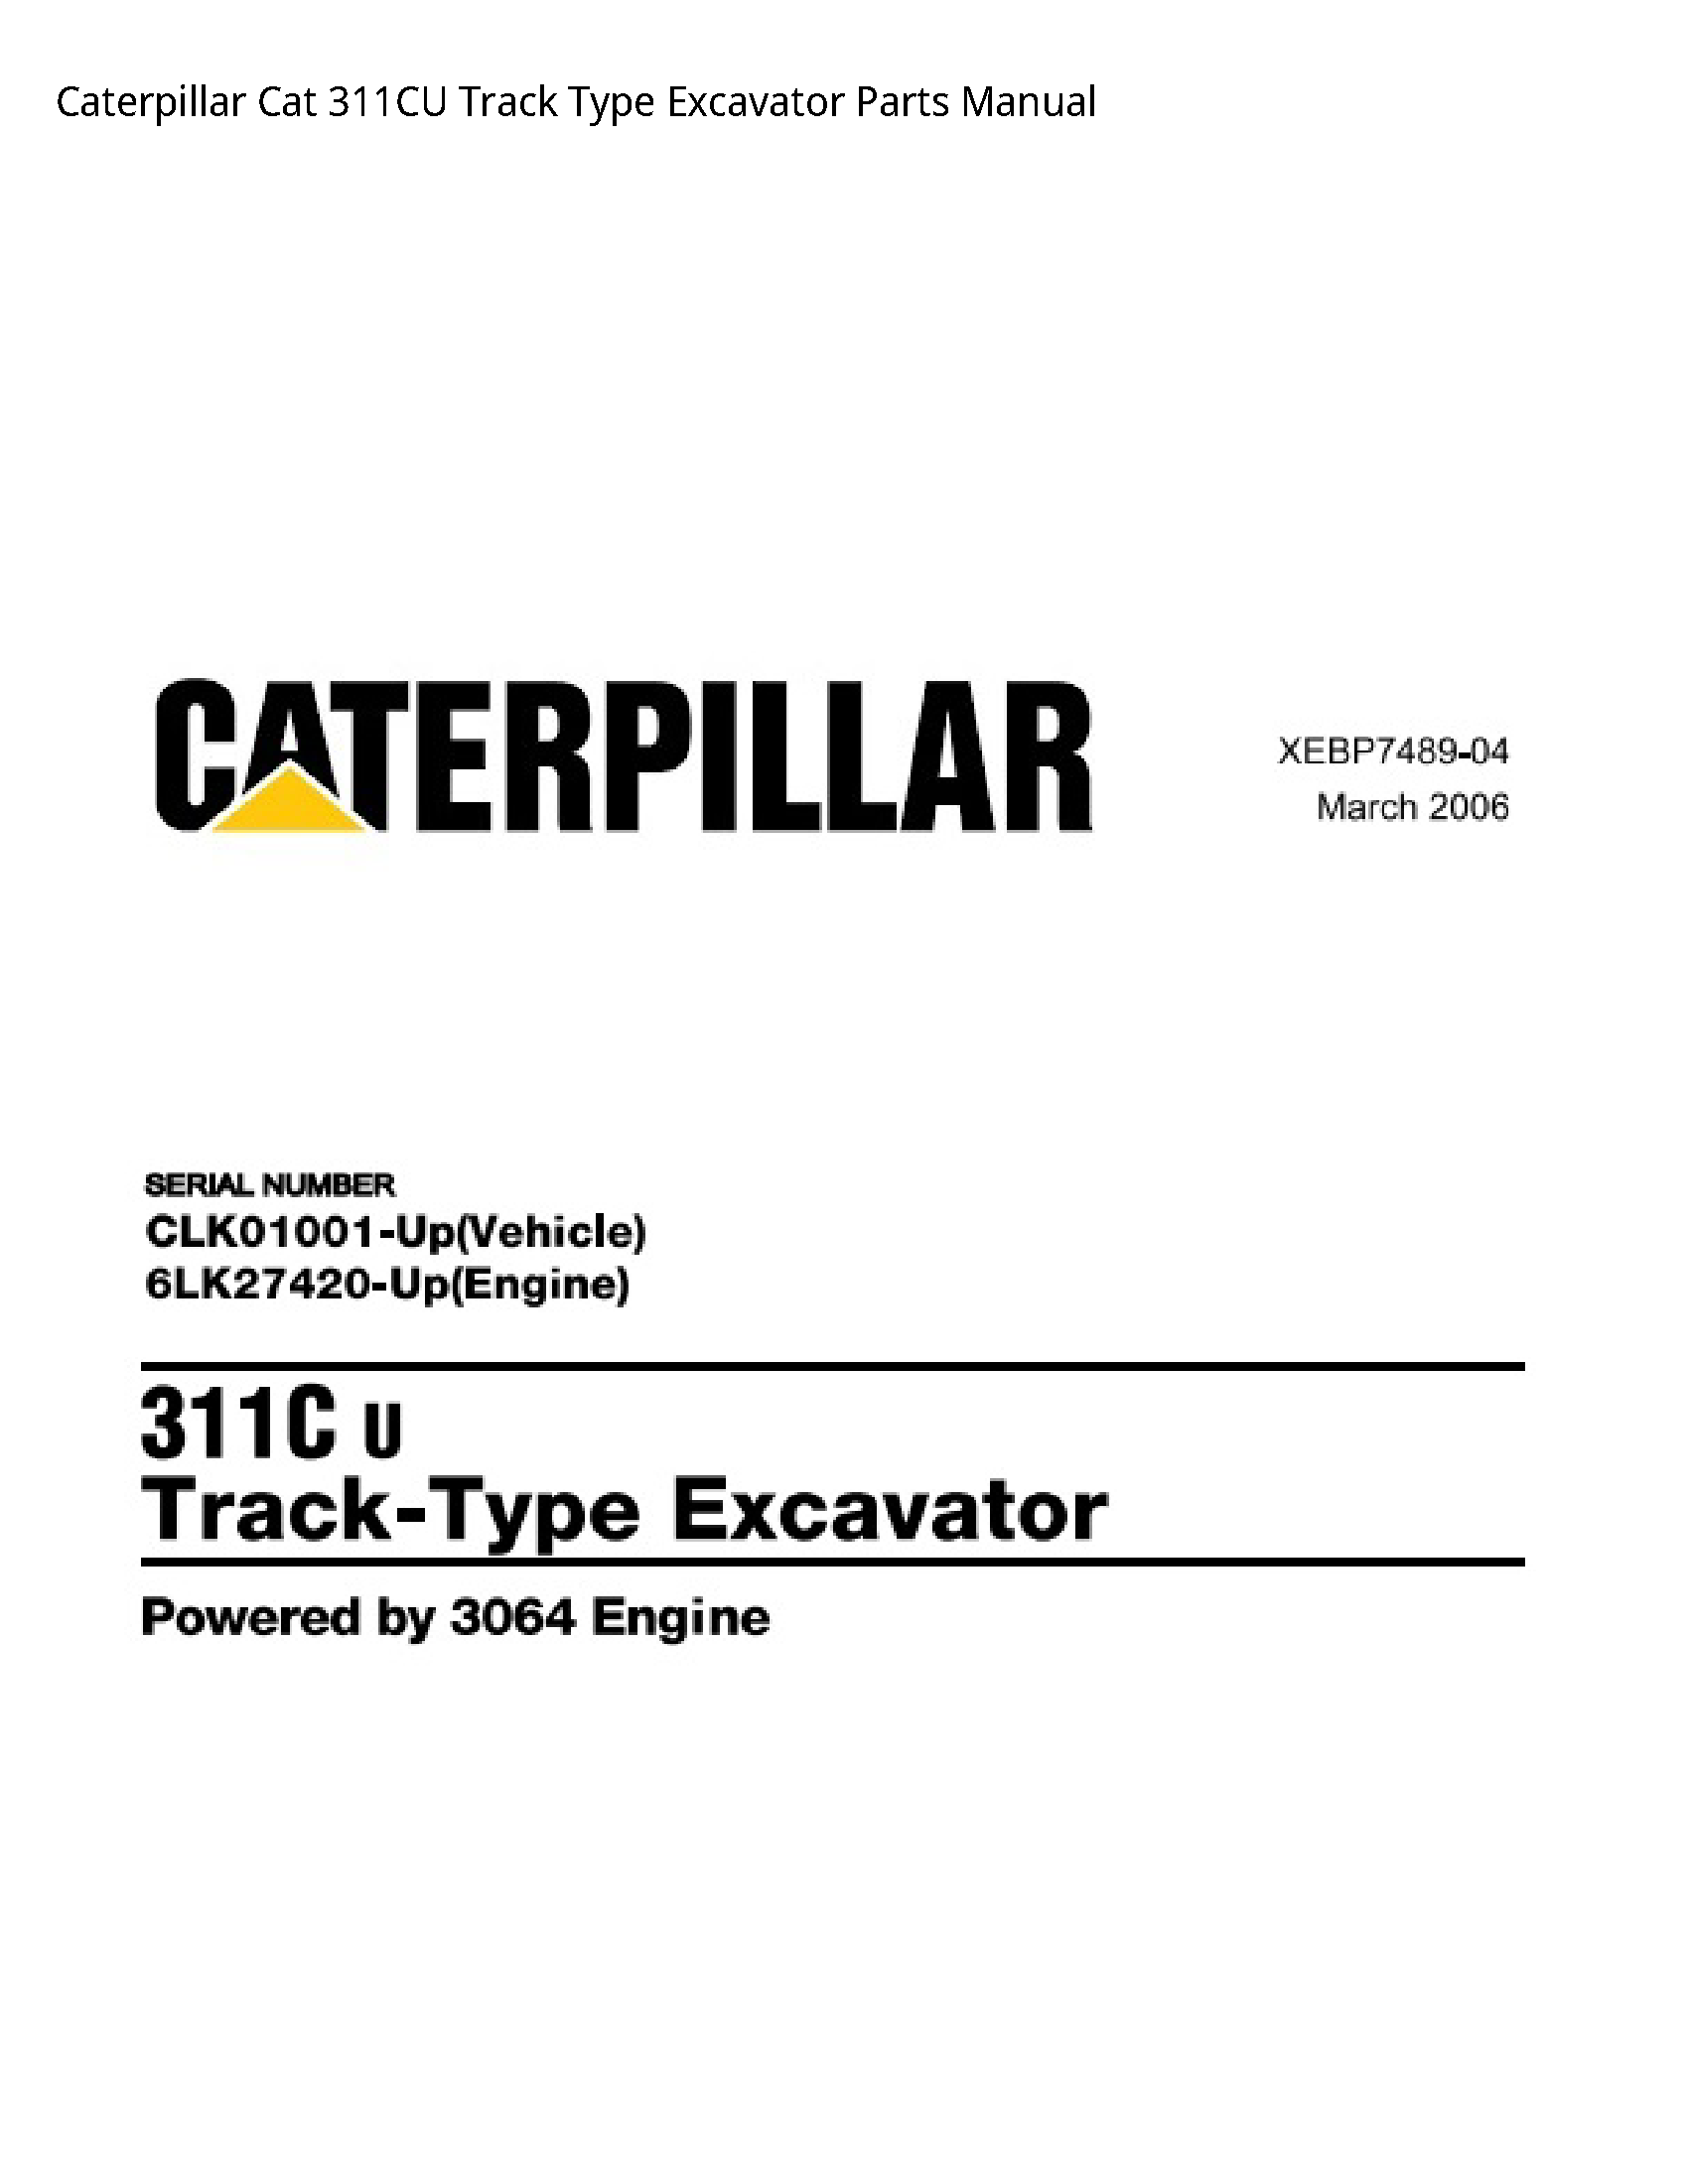 Caterpillar 311CU Cat Track Type Excavator Parts manual